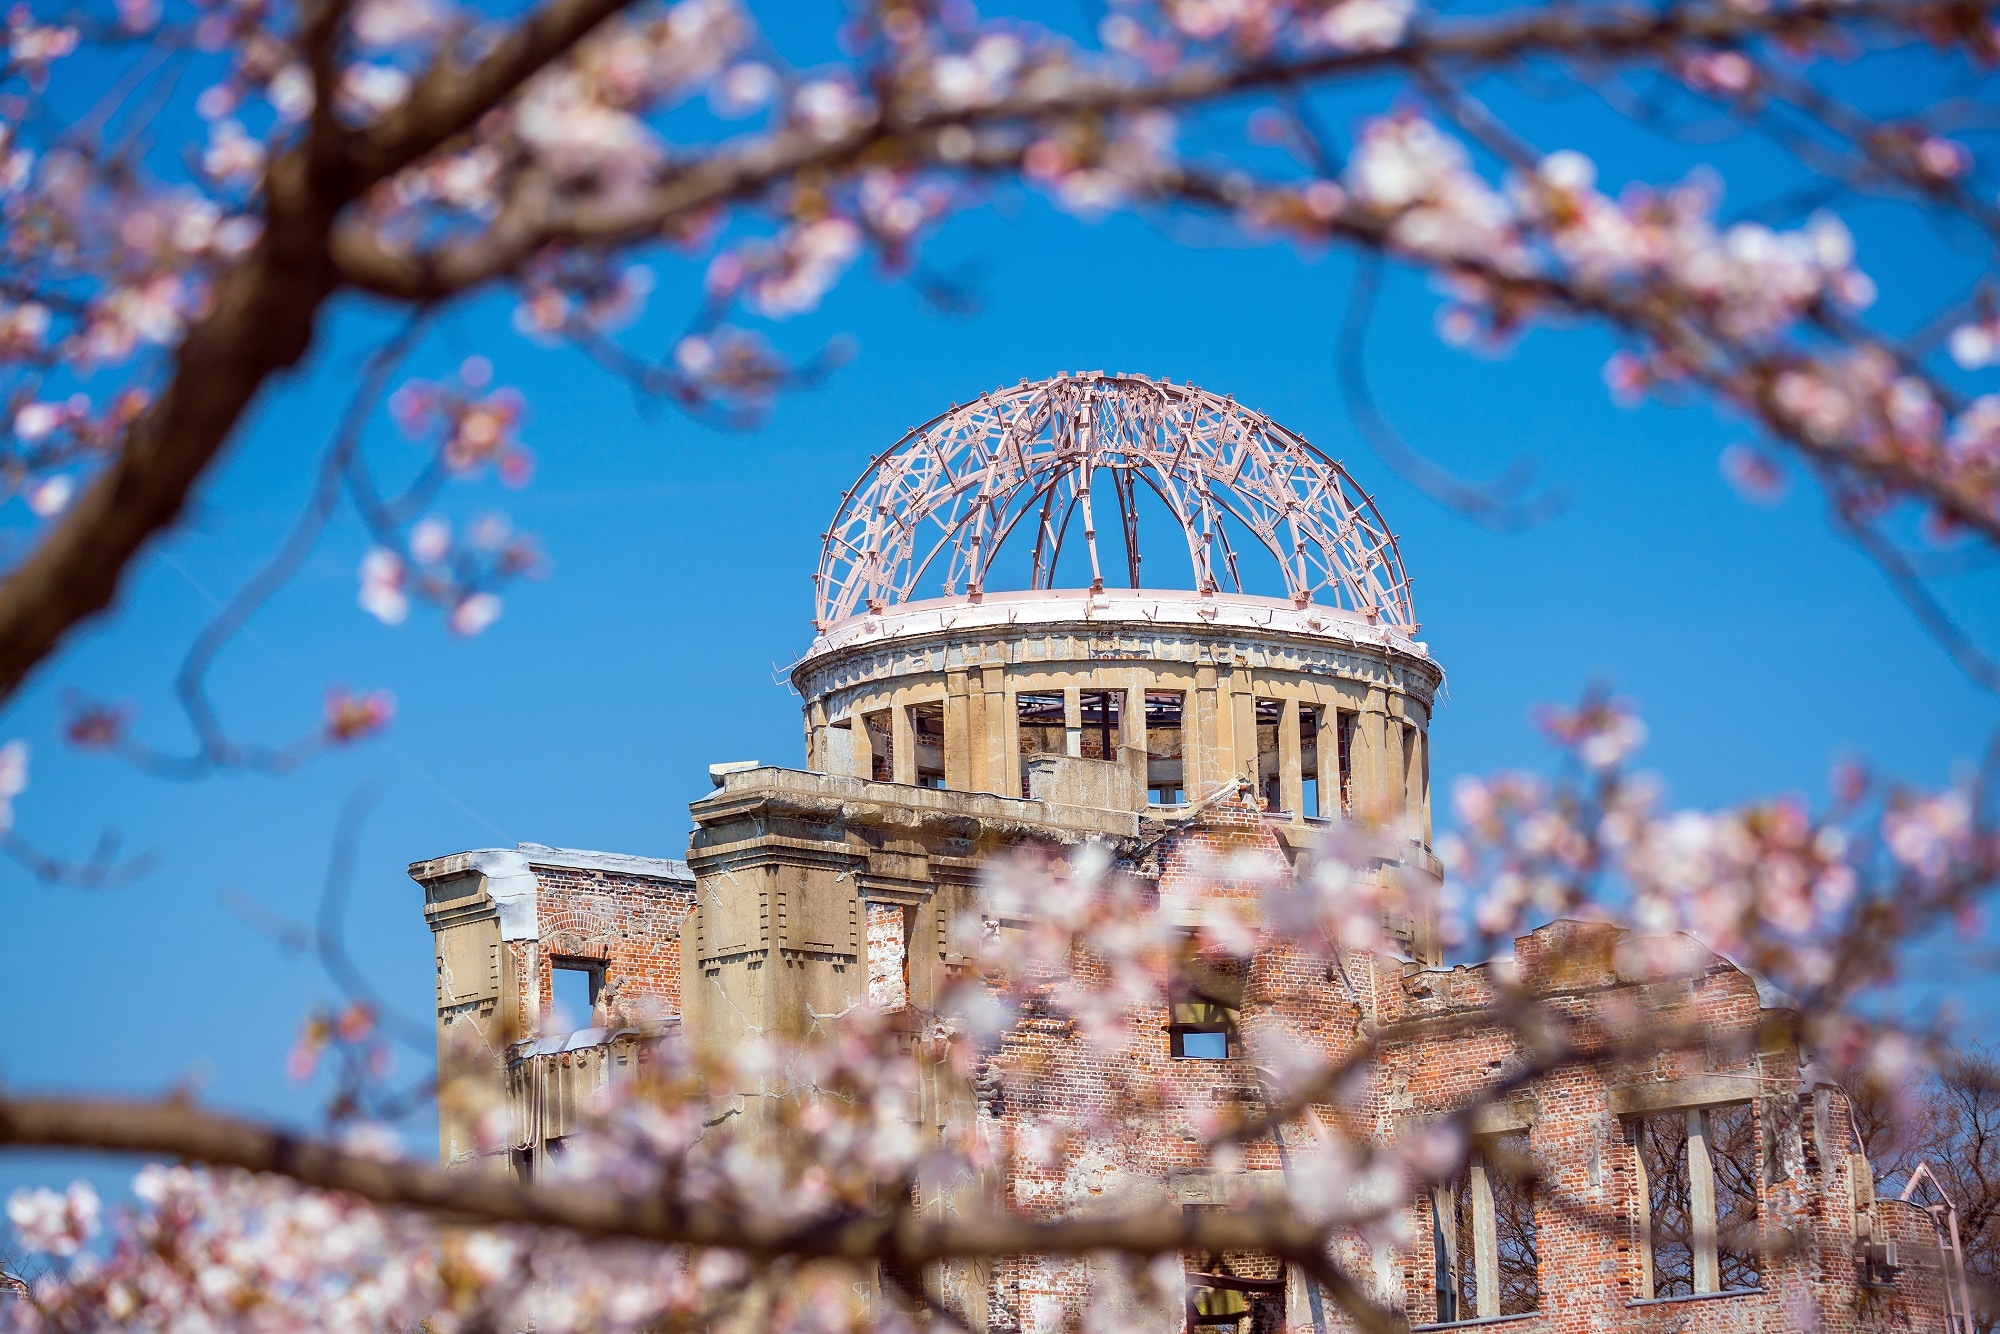 Hiroshima Peace Park